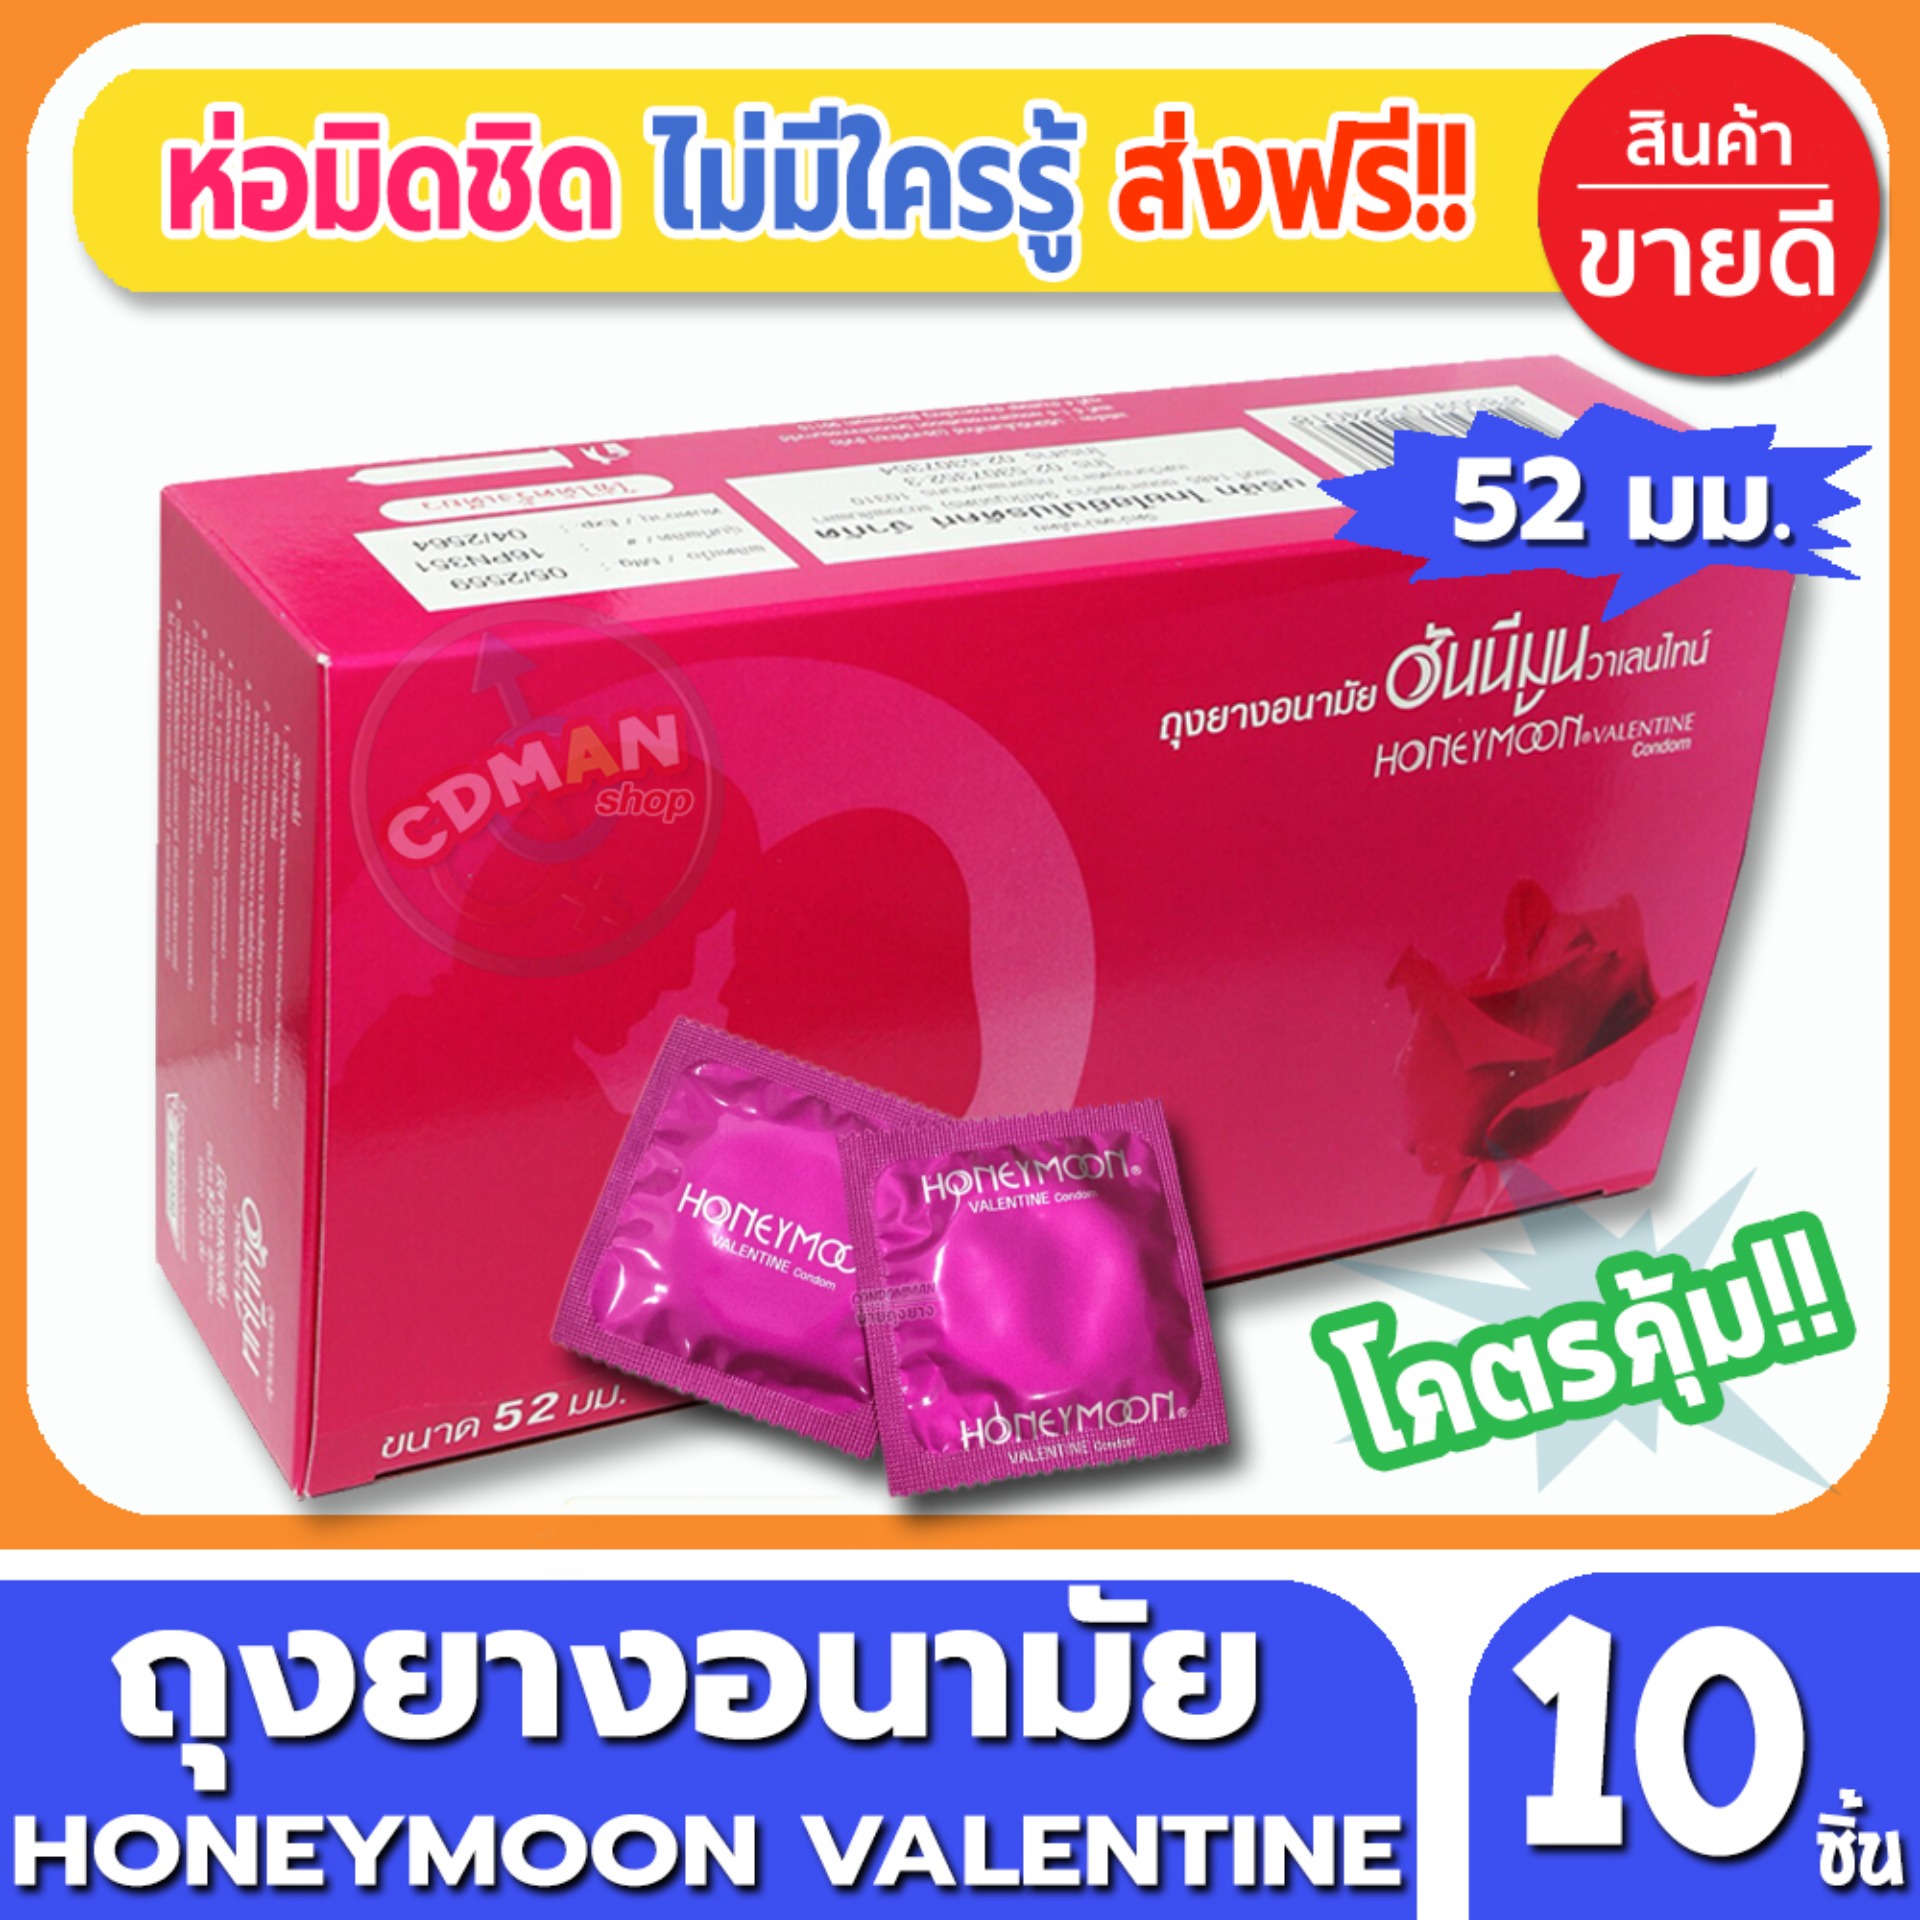 ถุงยางอนามัย Honeymoon Valentine Condom ถุงยาง ฮันนีมูน วาเลนไทน์ ขนาด 52 มม. จำนวน 10ชิ้น ถุงยางอนามัยคุณภาพดี ราคาเบาๆ สบายกระเป๋า พร้อมรับศึกหนักทั้งวันทั้งคืน